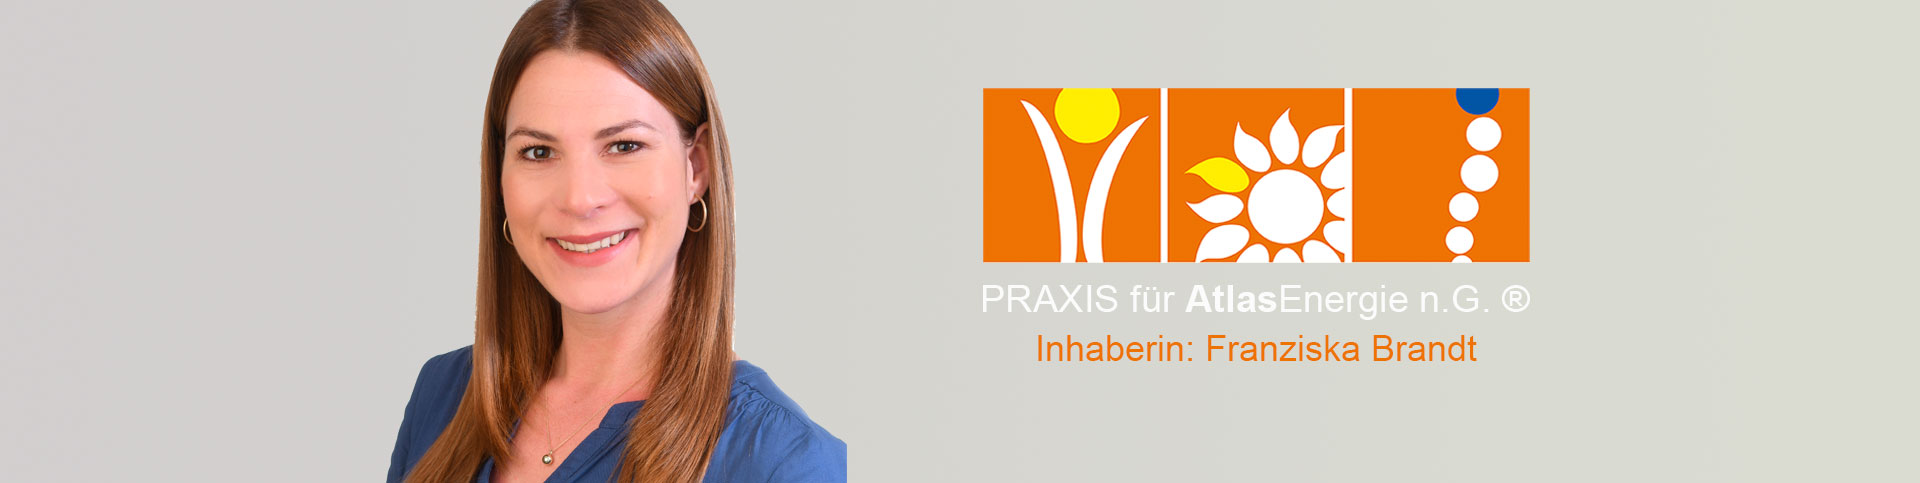 Praxis für AtlasEnergie - Franziska Brandt